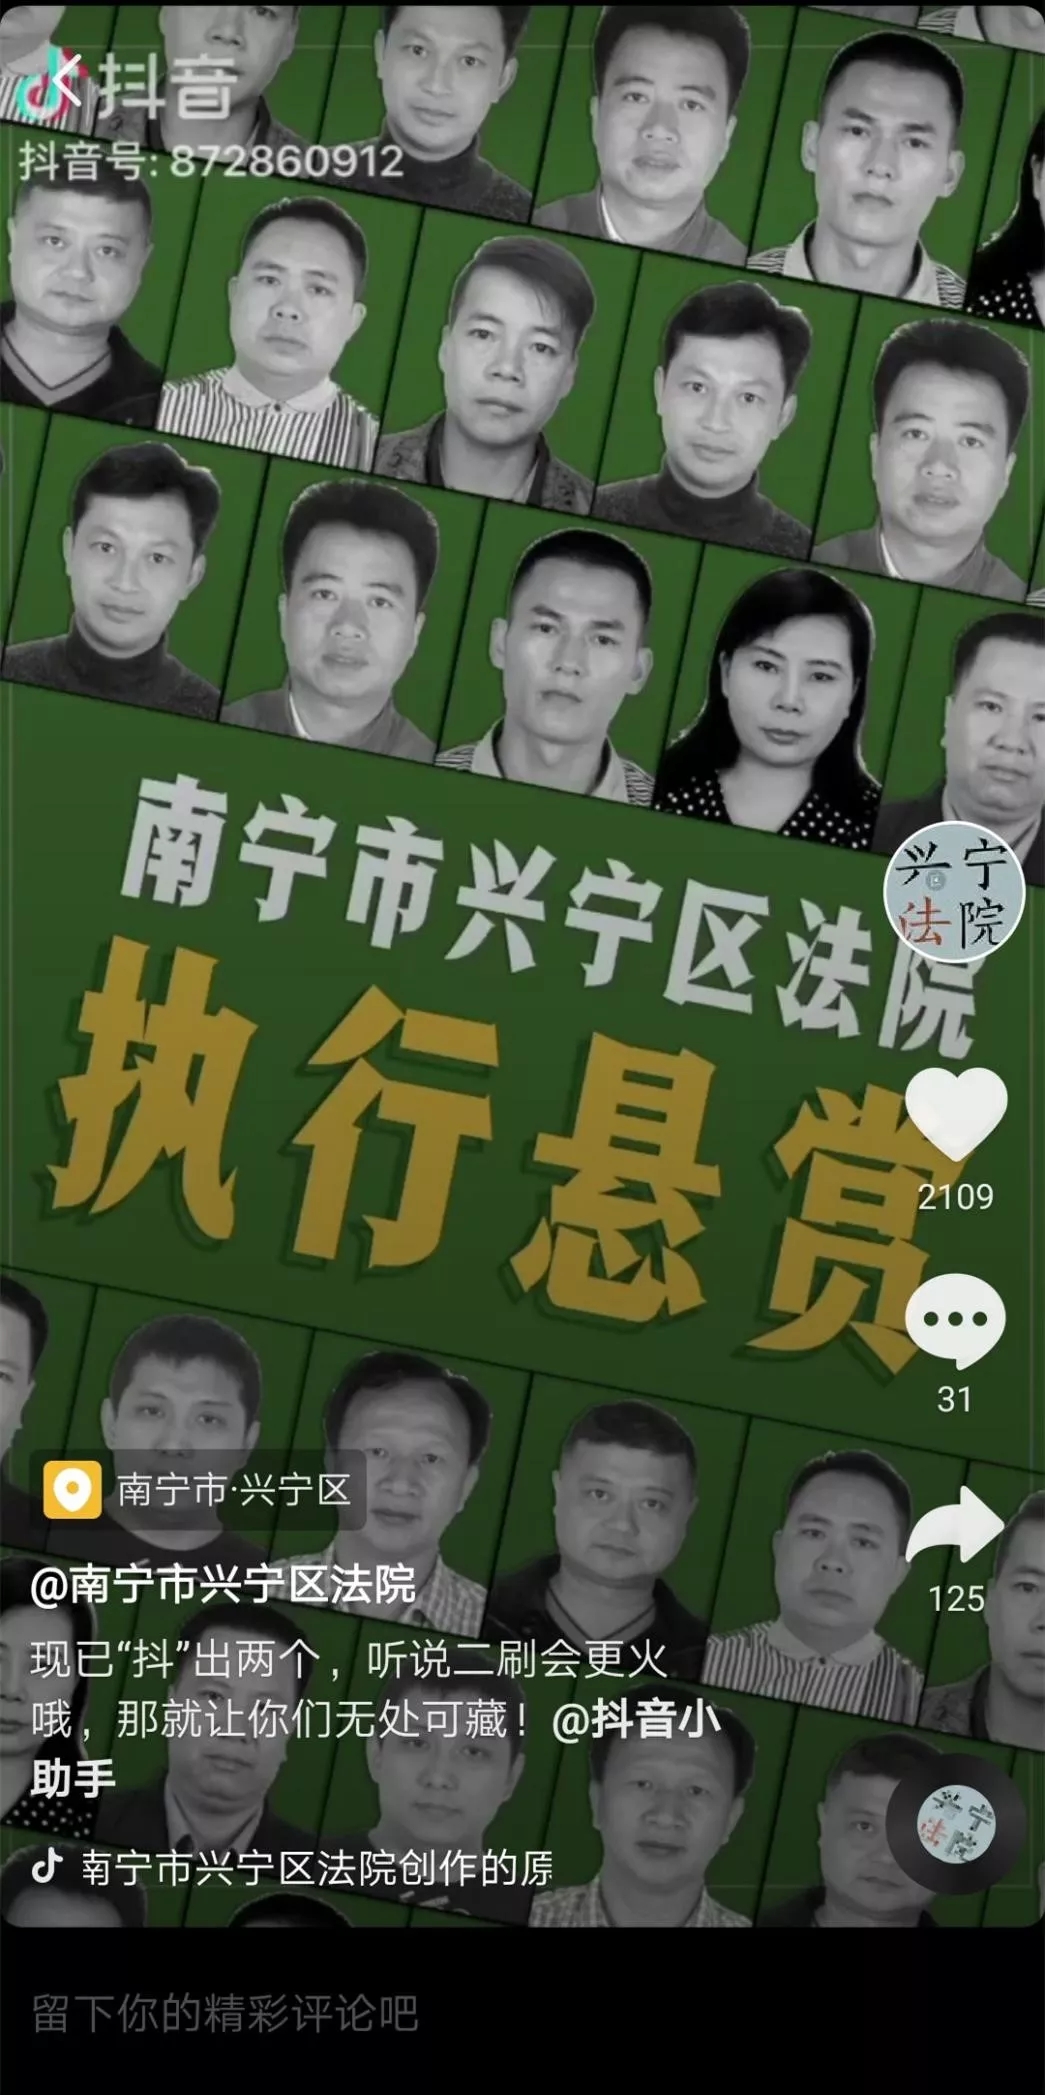 70年中国人如何追寻公平正义?这些第一次记录法治发展